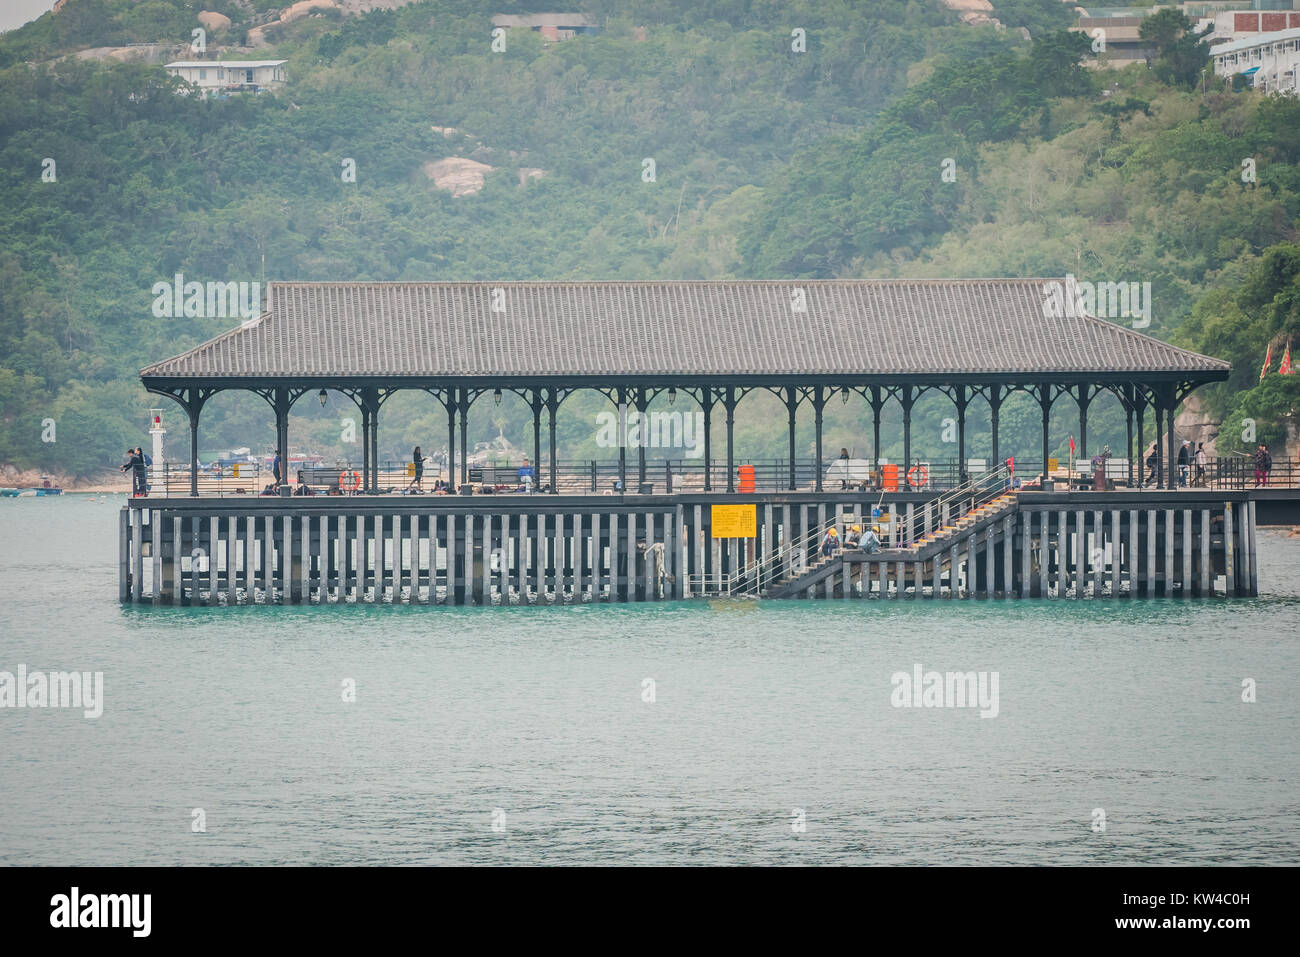 Hong Kong Stanley ist ein Dorf am Meer mit einer entspannten Atmosphäre beliebt bei Touristen Stockfoto